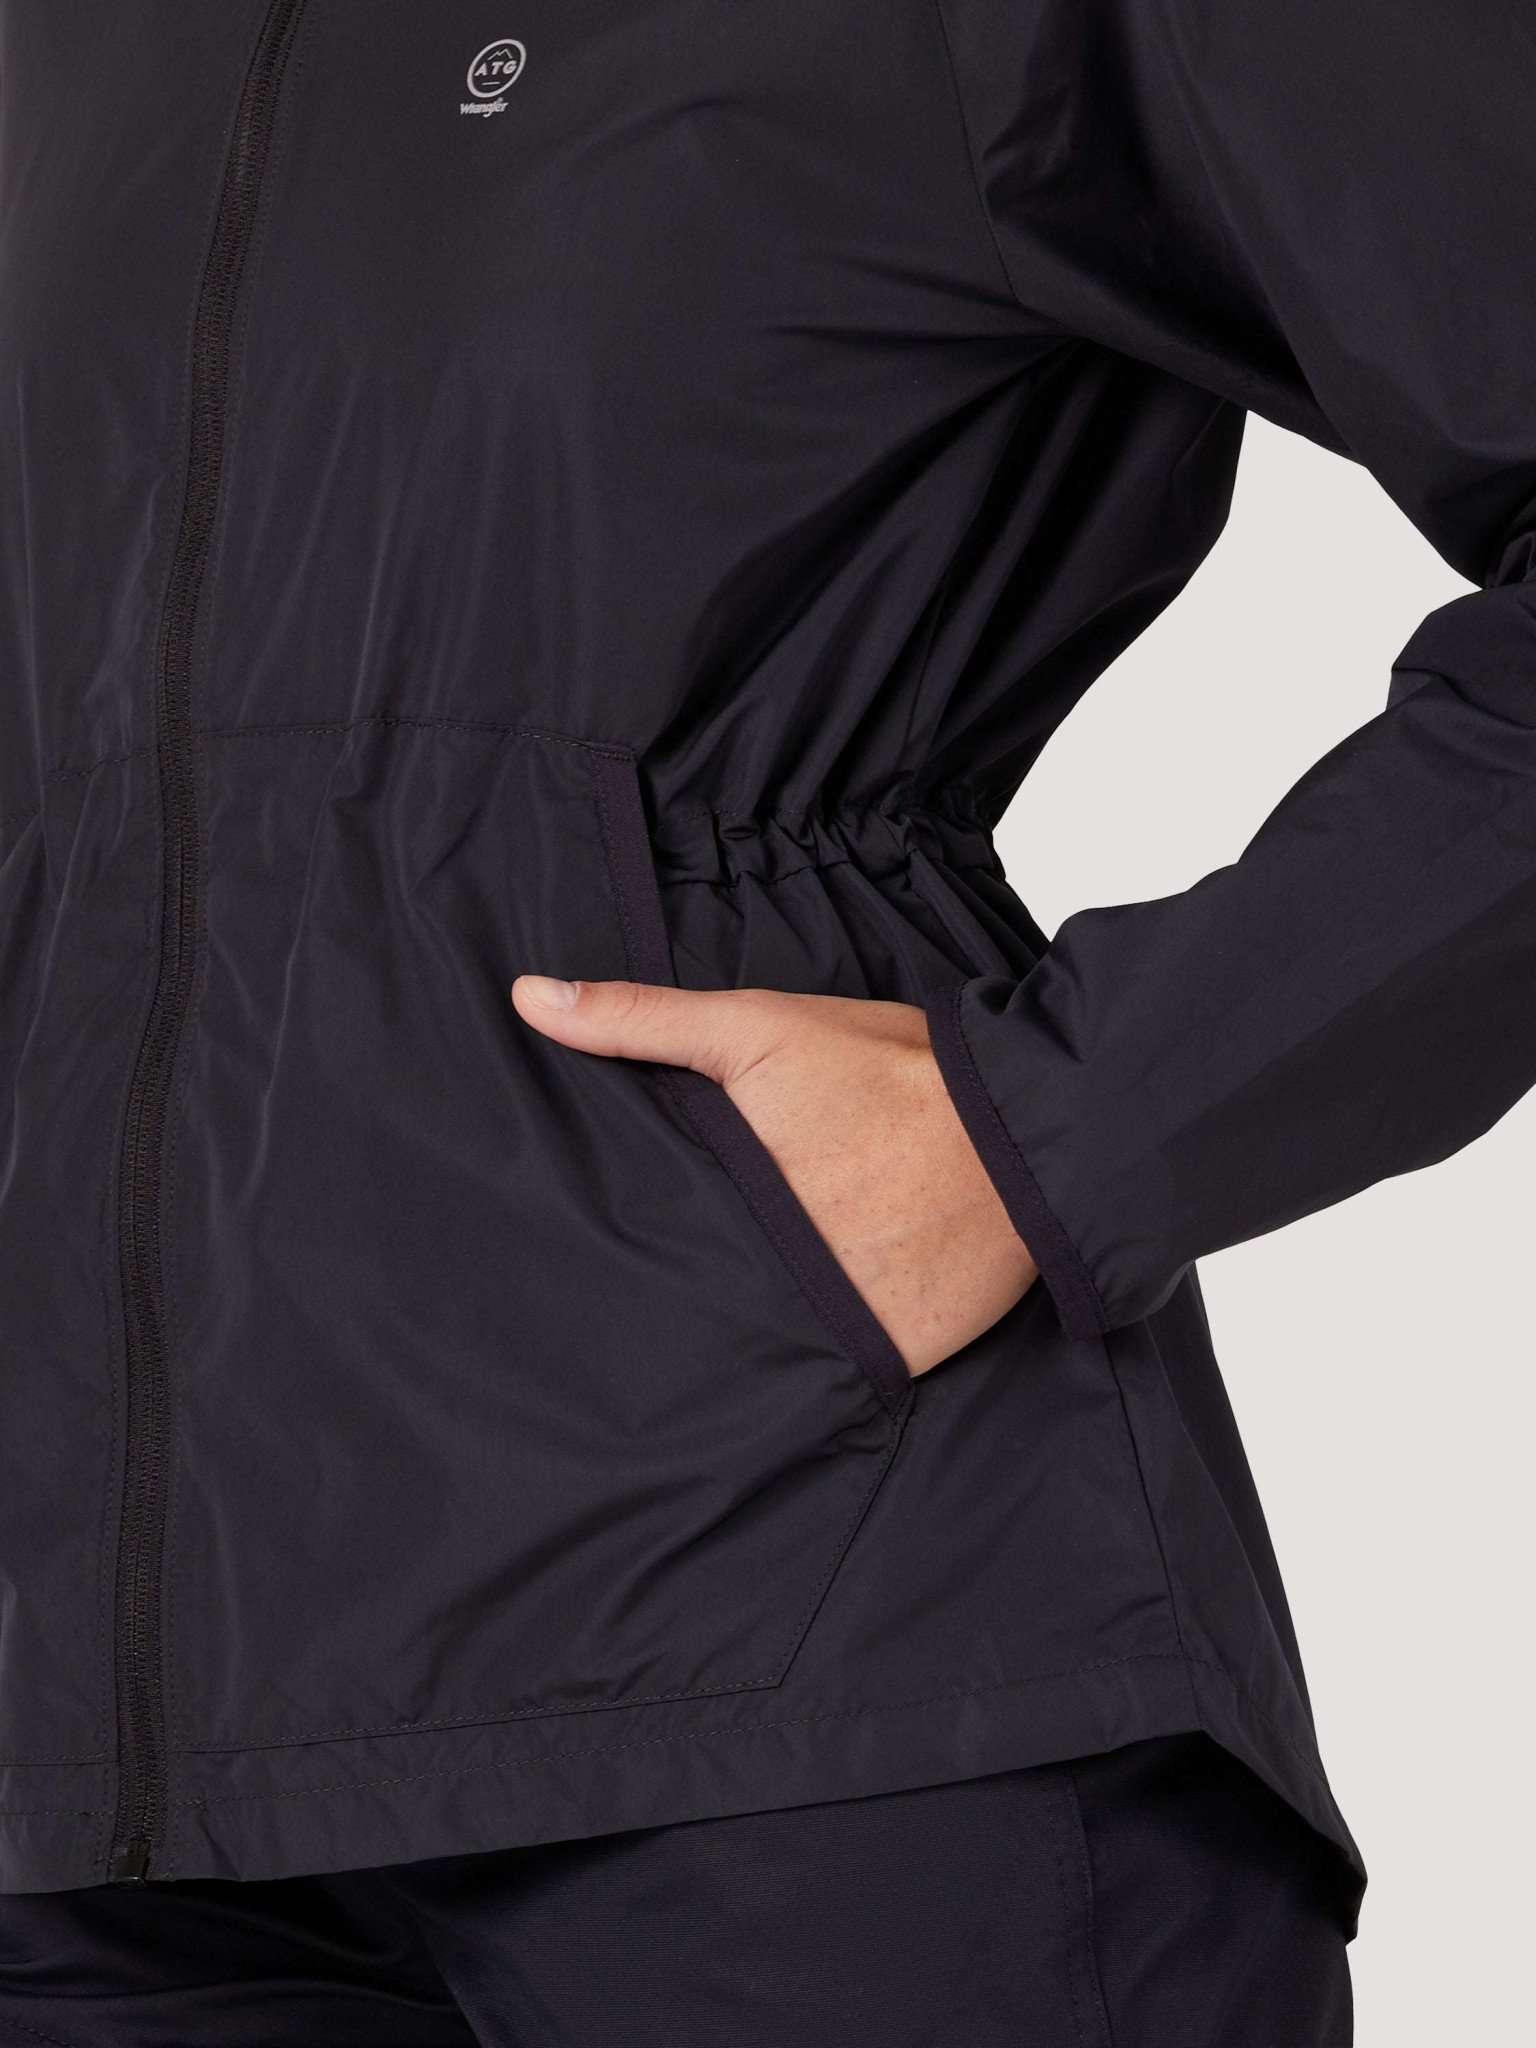 All Terrain Gear Packable Jacket in Black Jacken Wrangler   